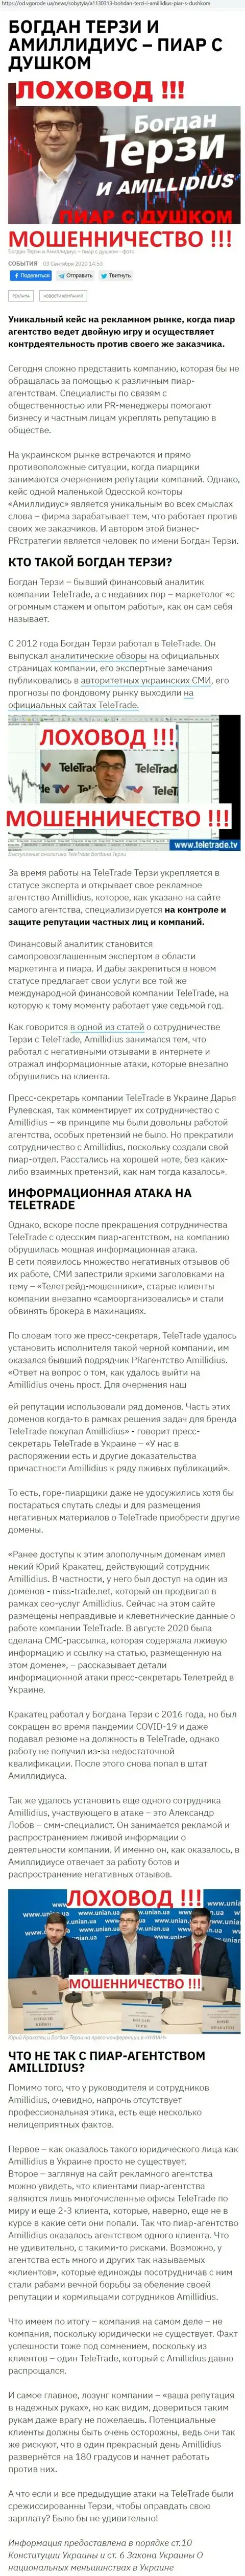 Богдан Терзи ненадежный партнер, данные со слов бывшего сотрудника компании Амиллидиус